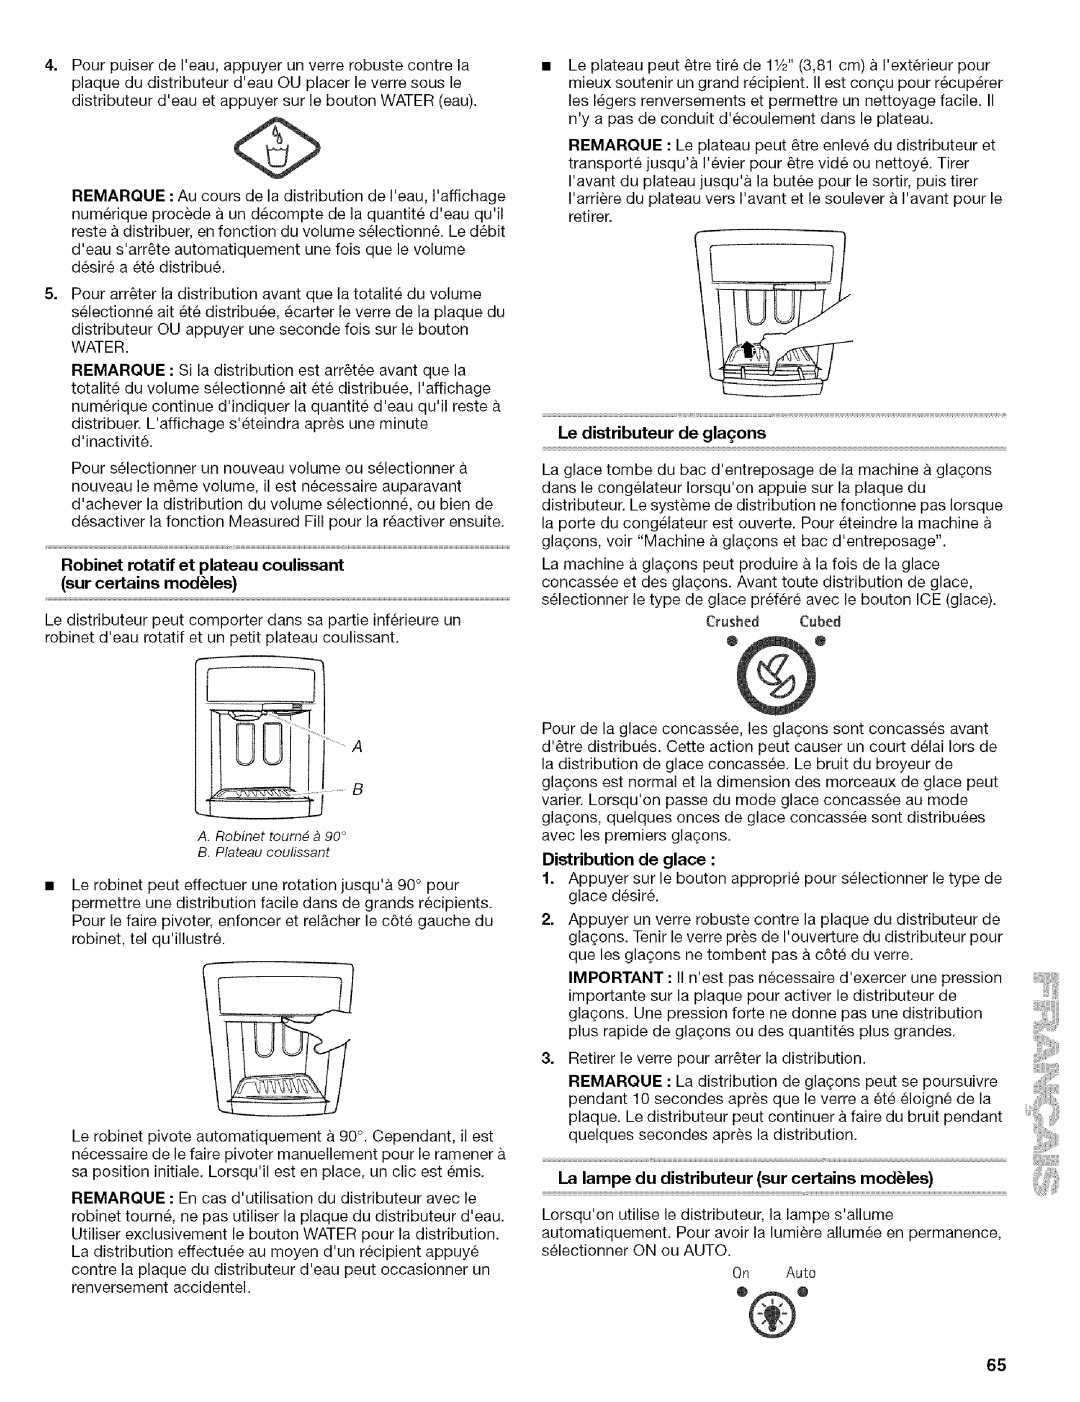 Kenmore 10656712500 manual Le distributeur de gla_ons, Distribution de glace, La lampe du distributeur sur certains modules 